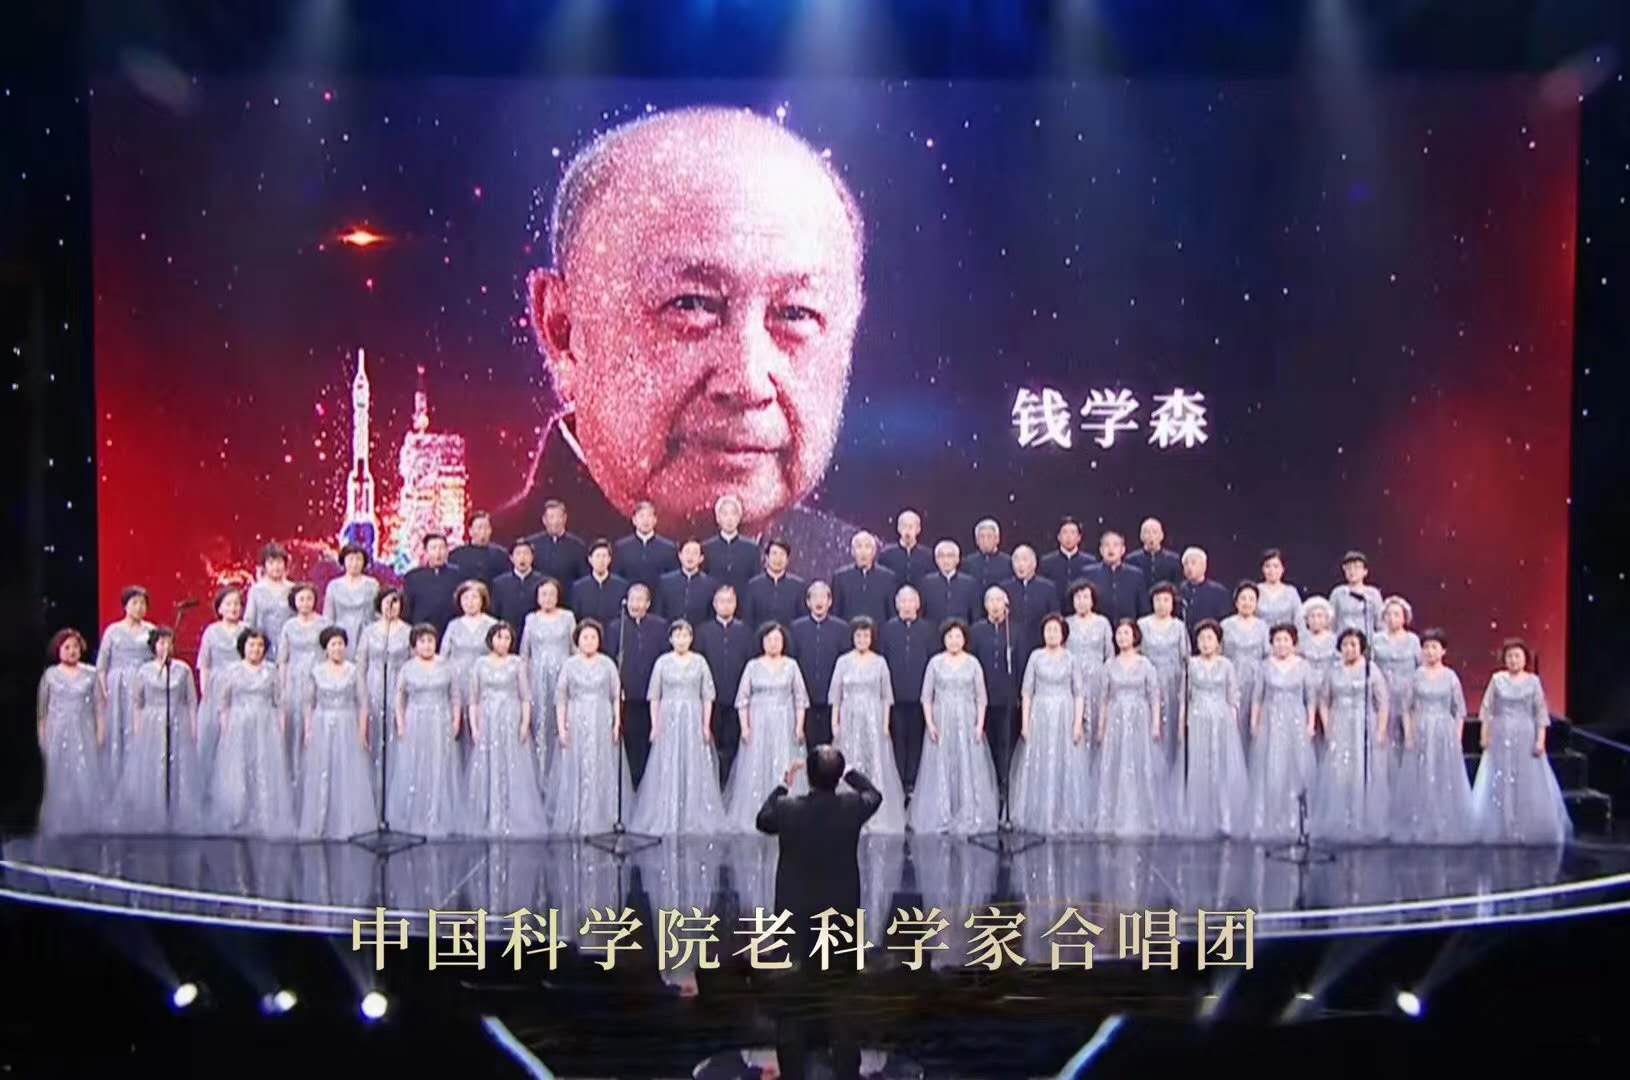 中国科学院老科学家合唱团